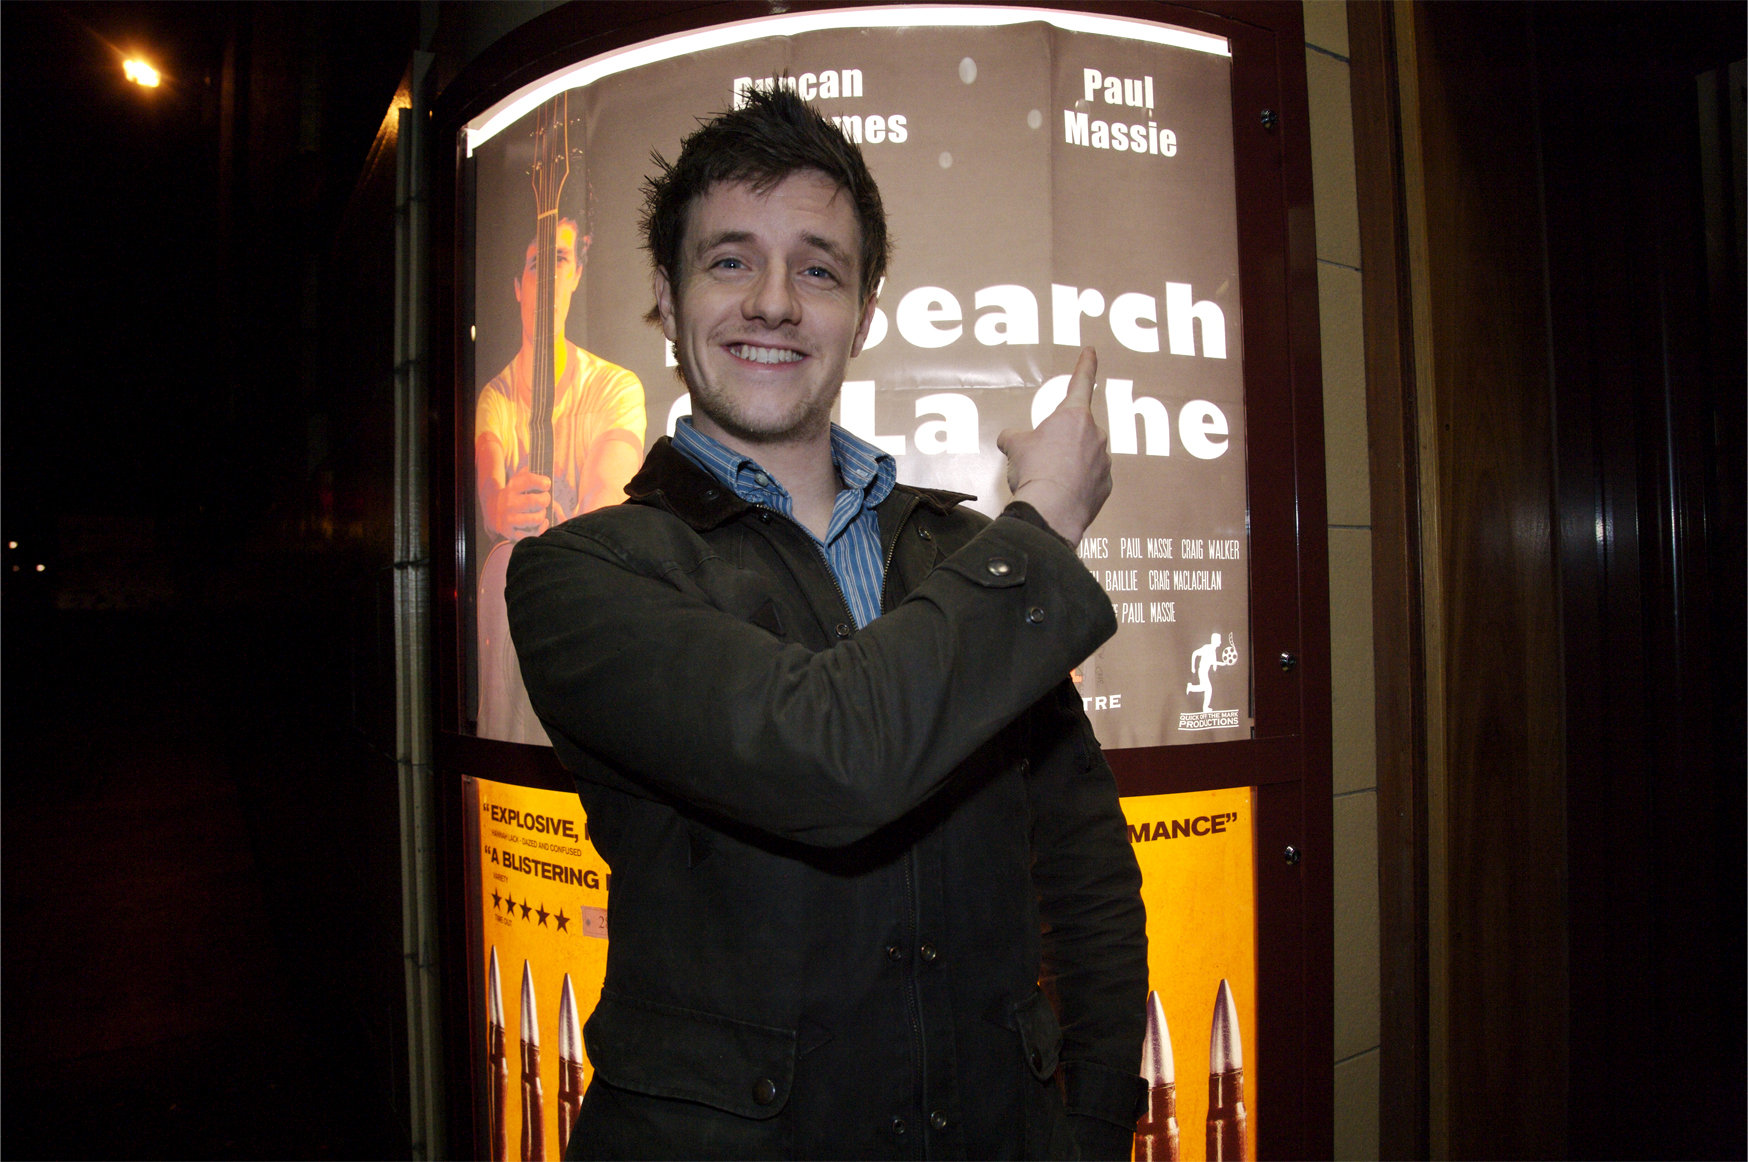 Paul Massie at the In Search Of La Che Premiere at the Glasgow Film Theatre